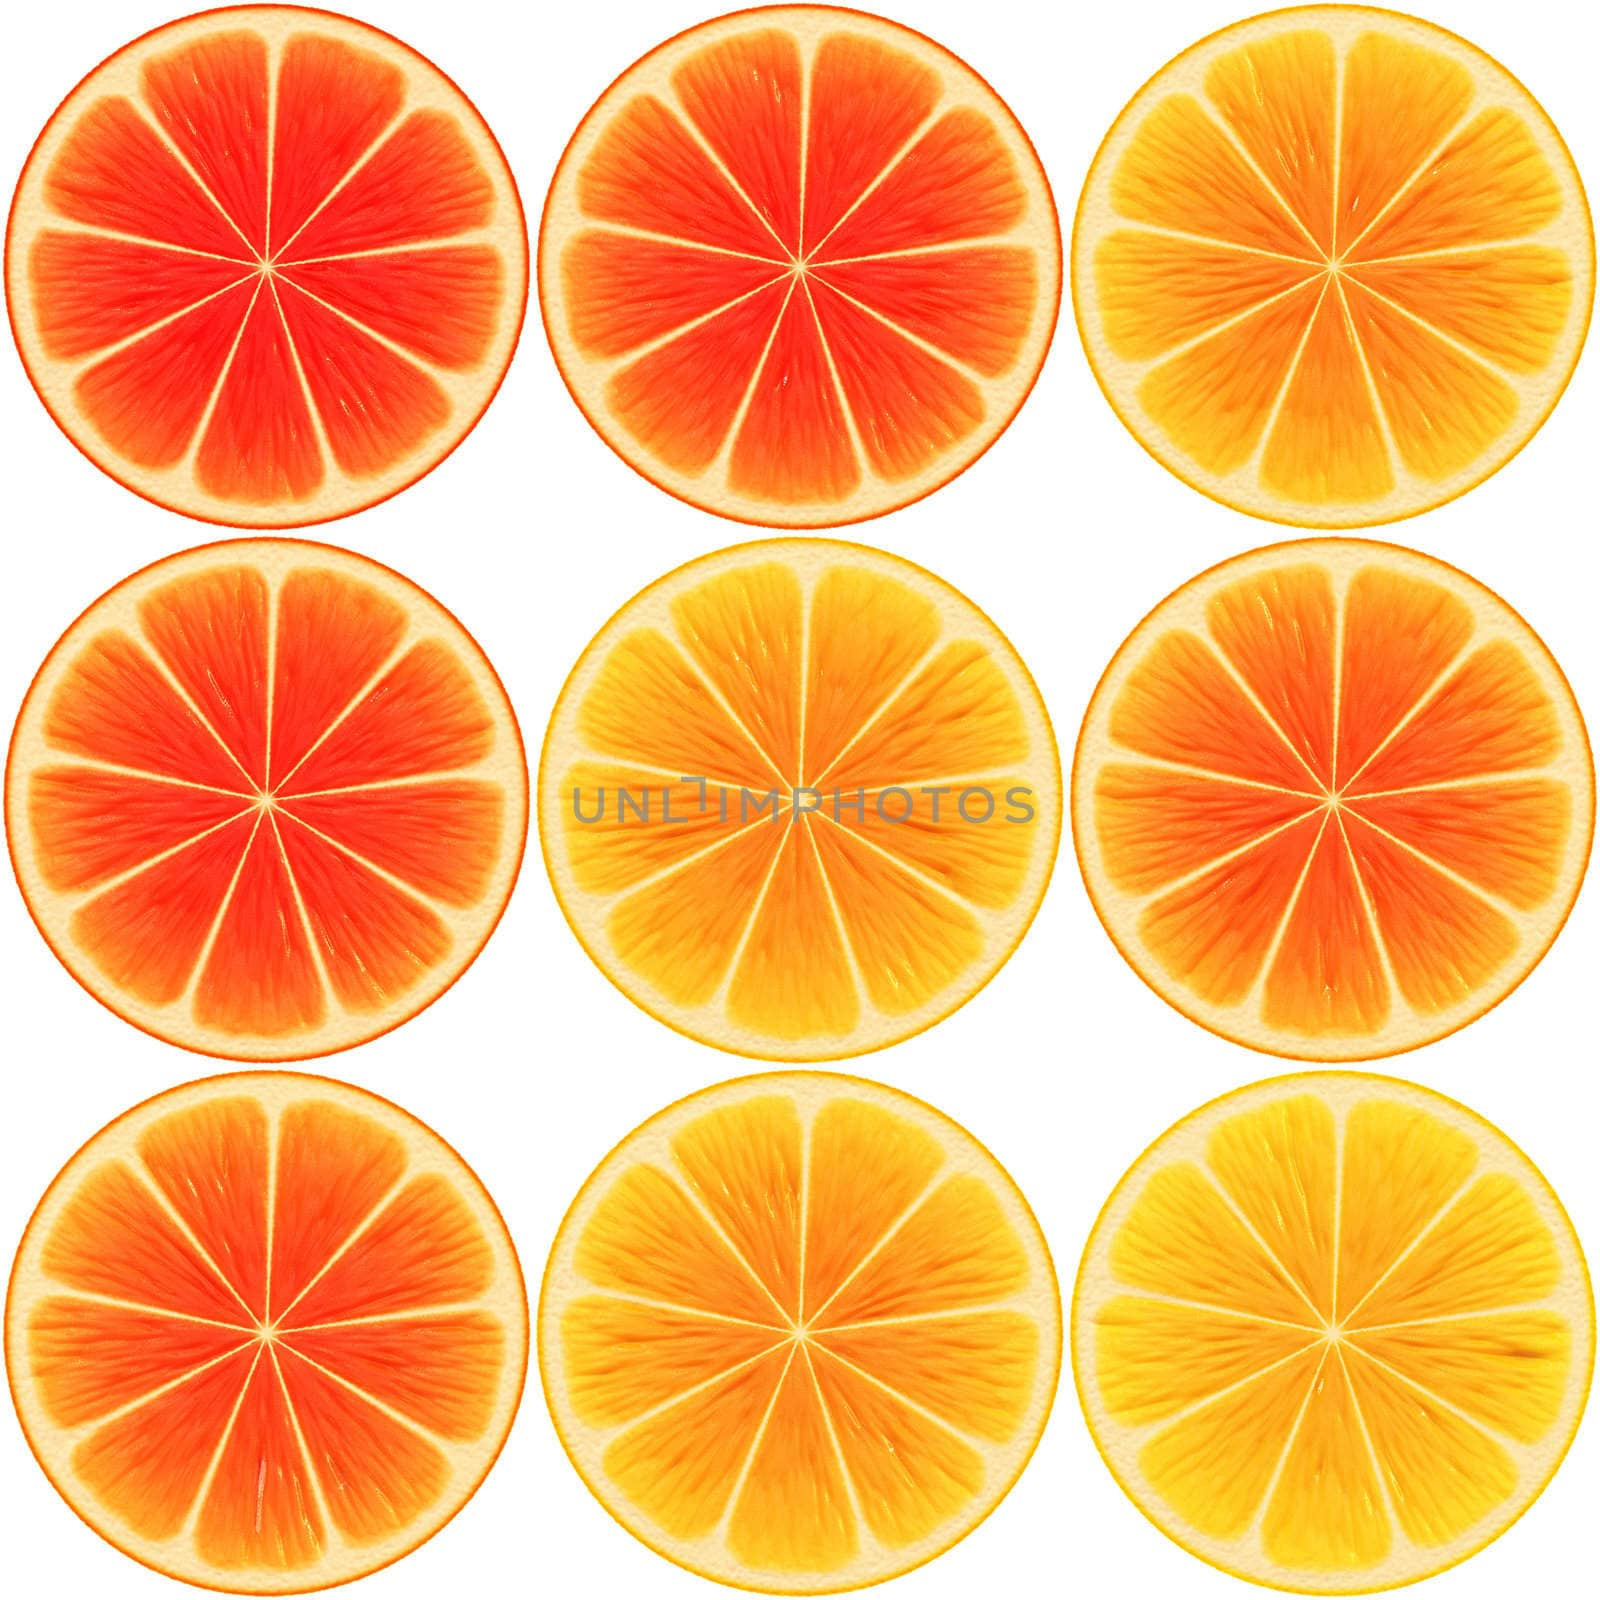 9 oranges by hospitalera